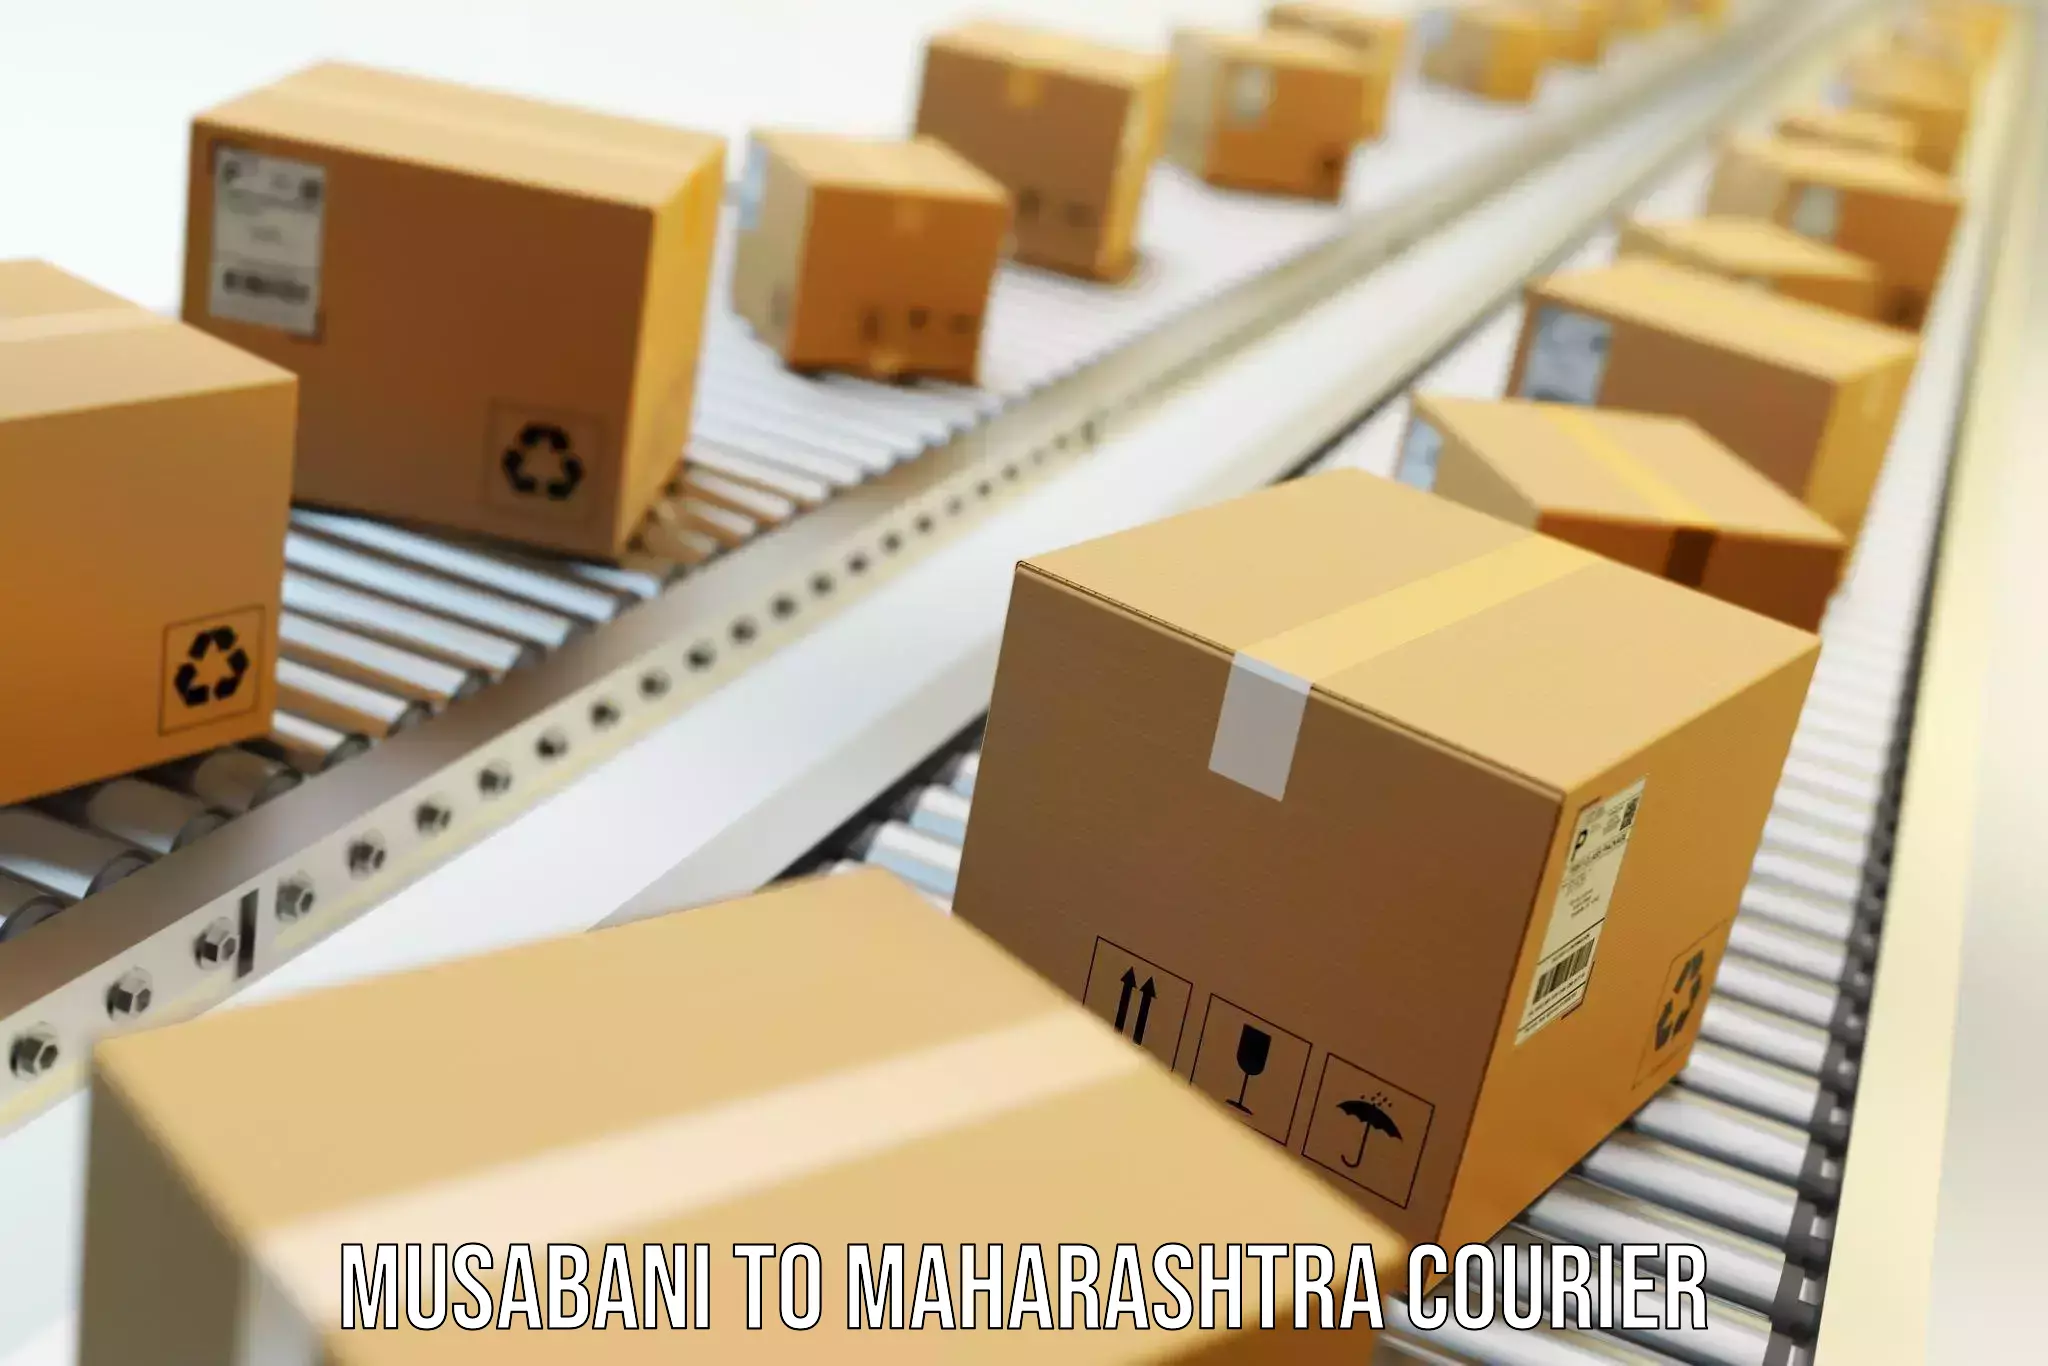 Full home relocation services Musabani to Maharashtra